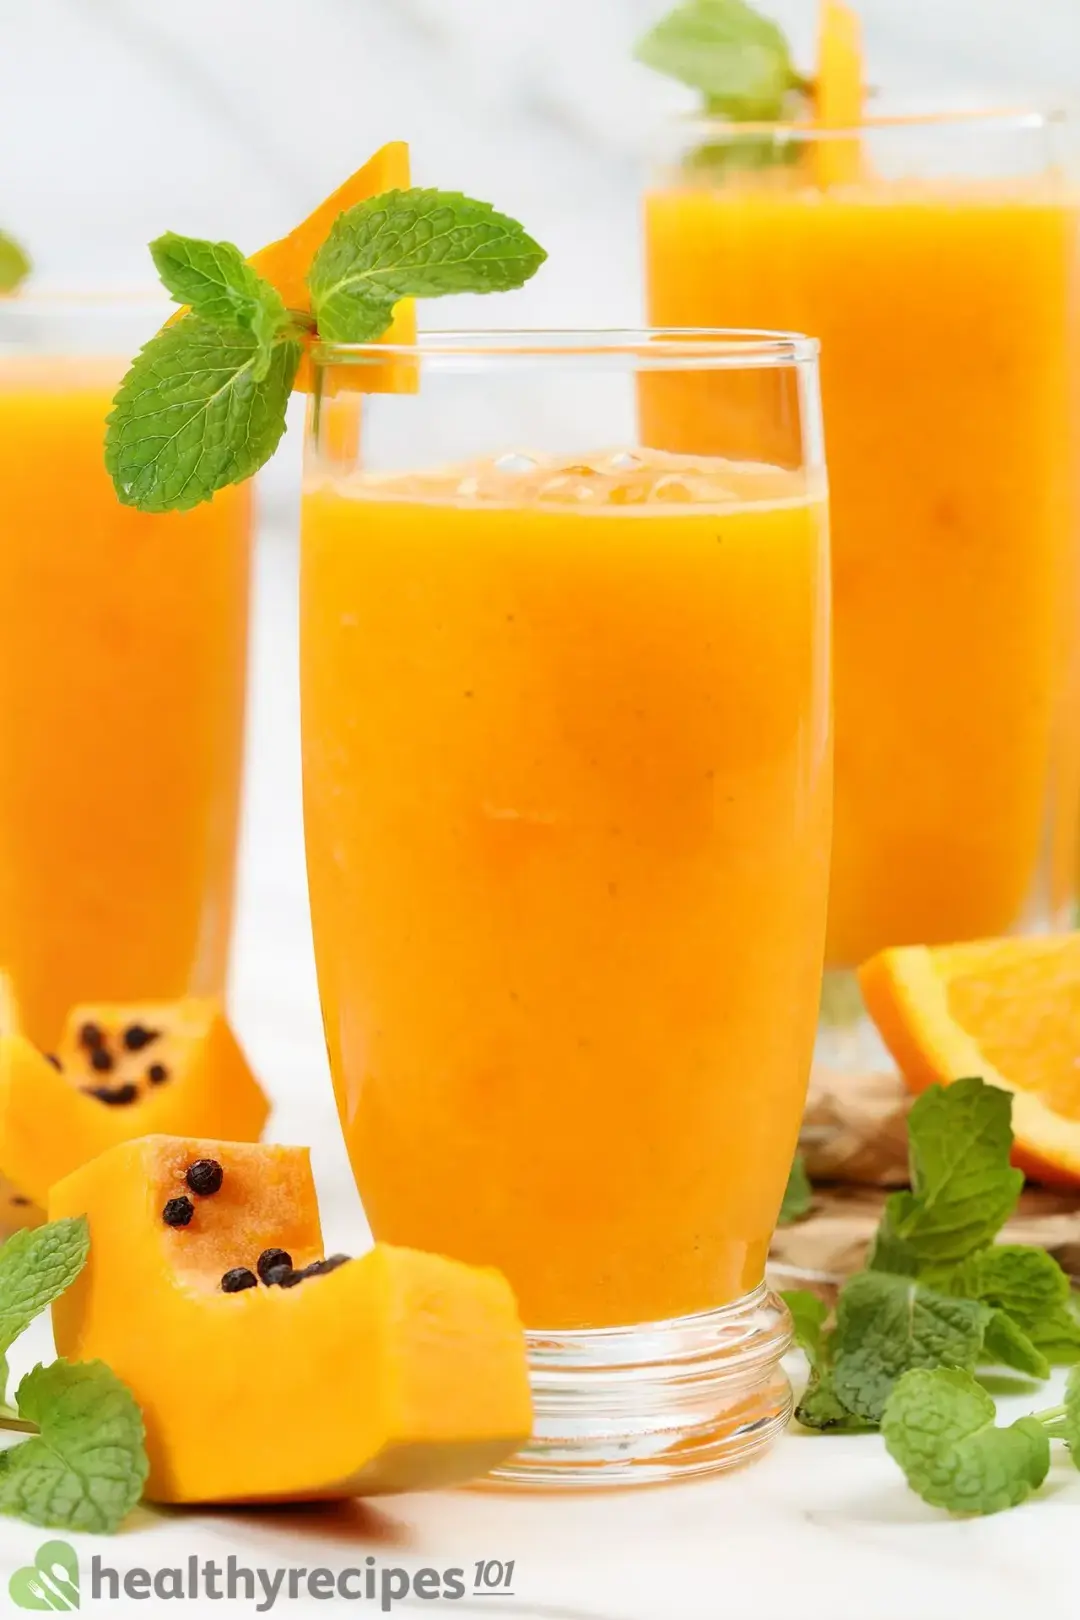 Homemade papaya juice recipe